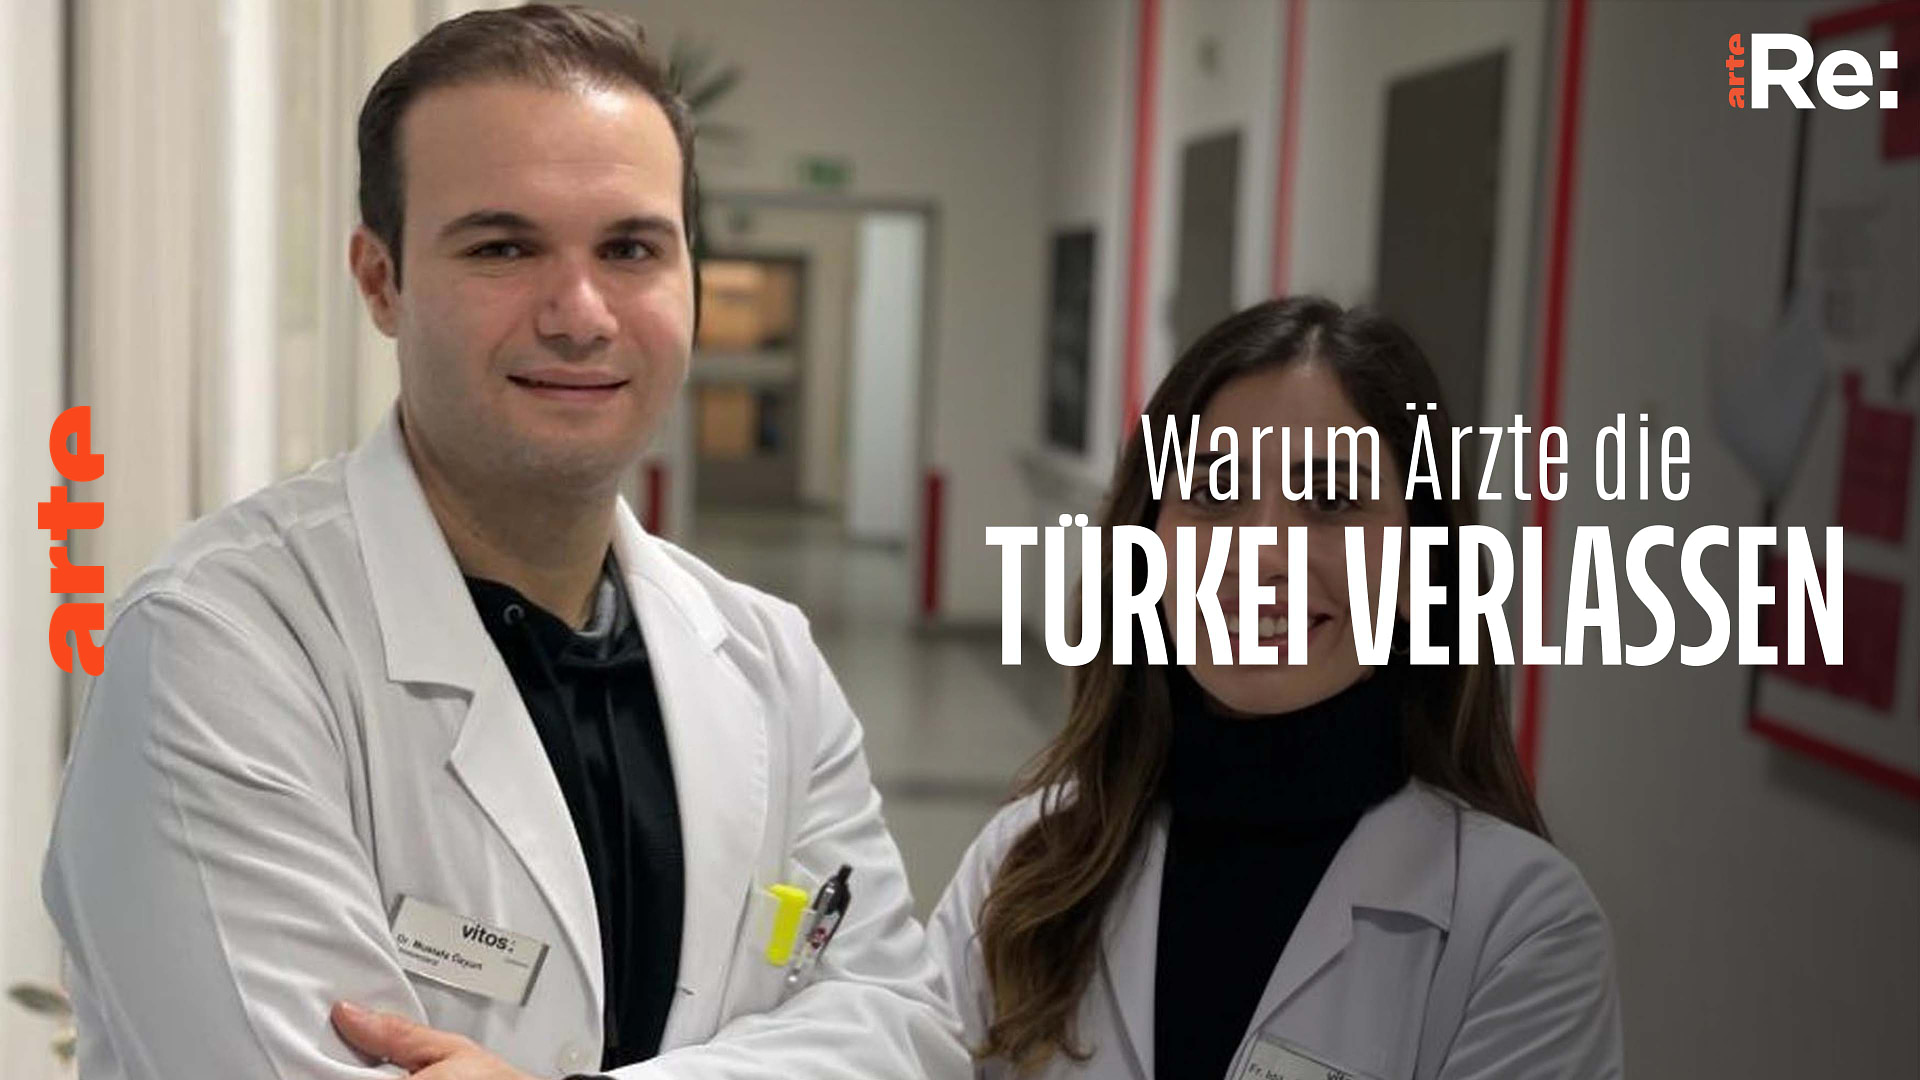 Re: Warum Ärzte die Türkei verlassen